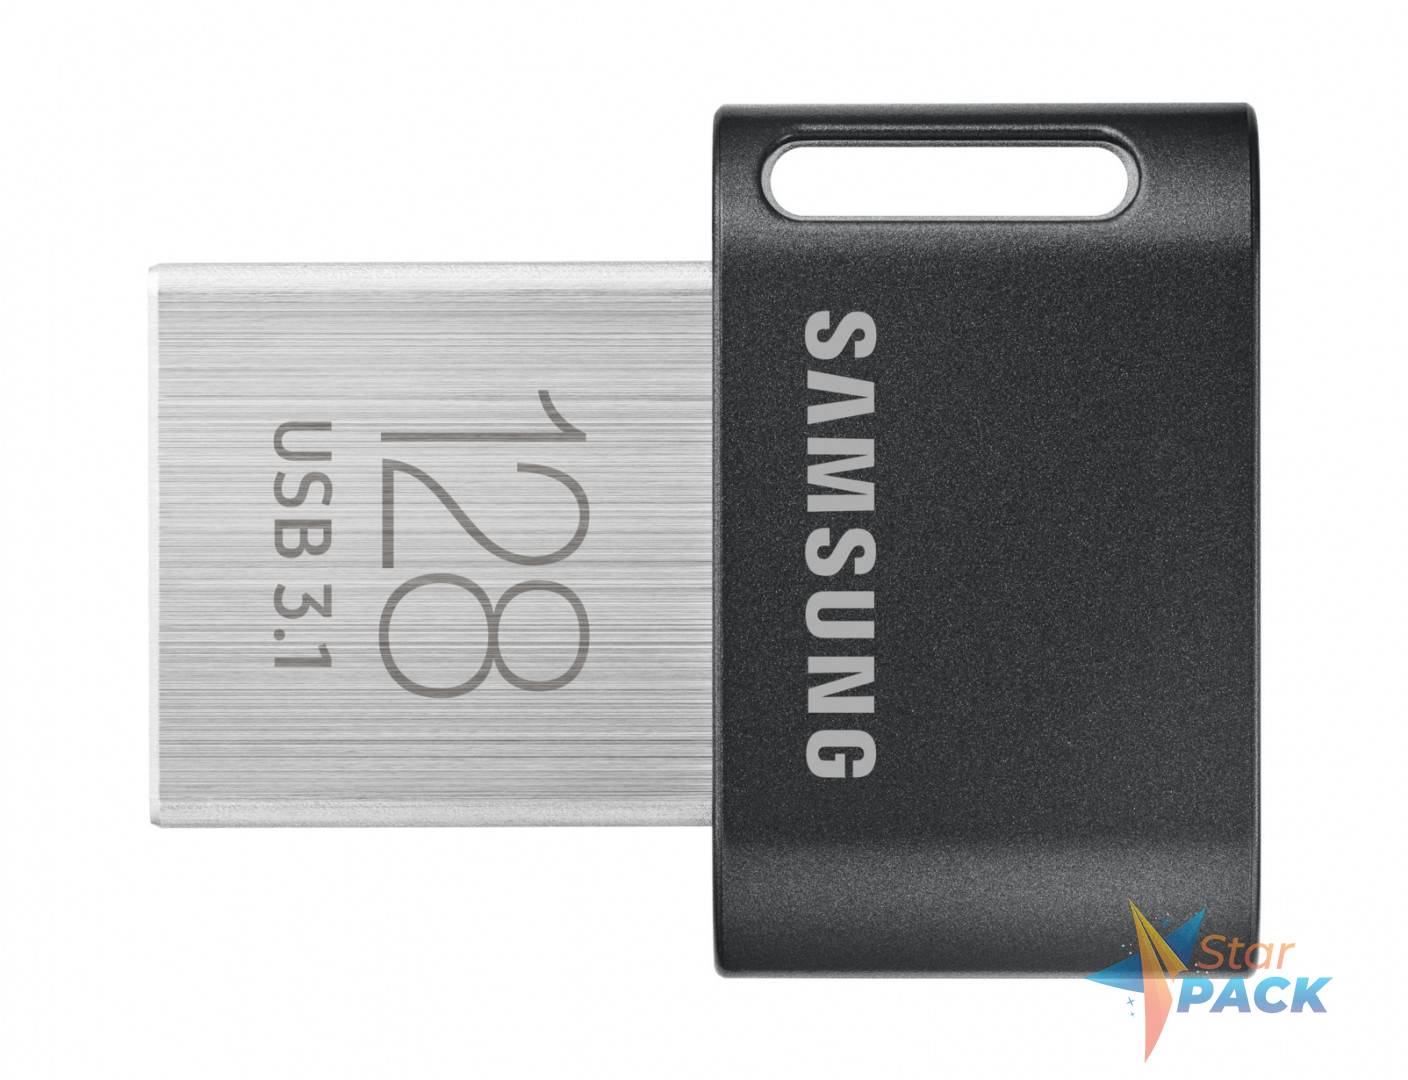 MEMORIE USB SAMSUNG 128 GB, USB 3.1, profil mic, carcasa plastic, negru